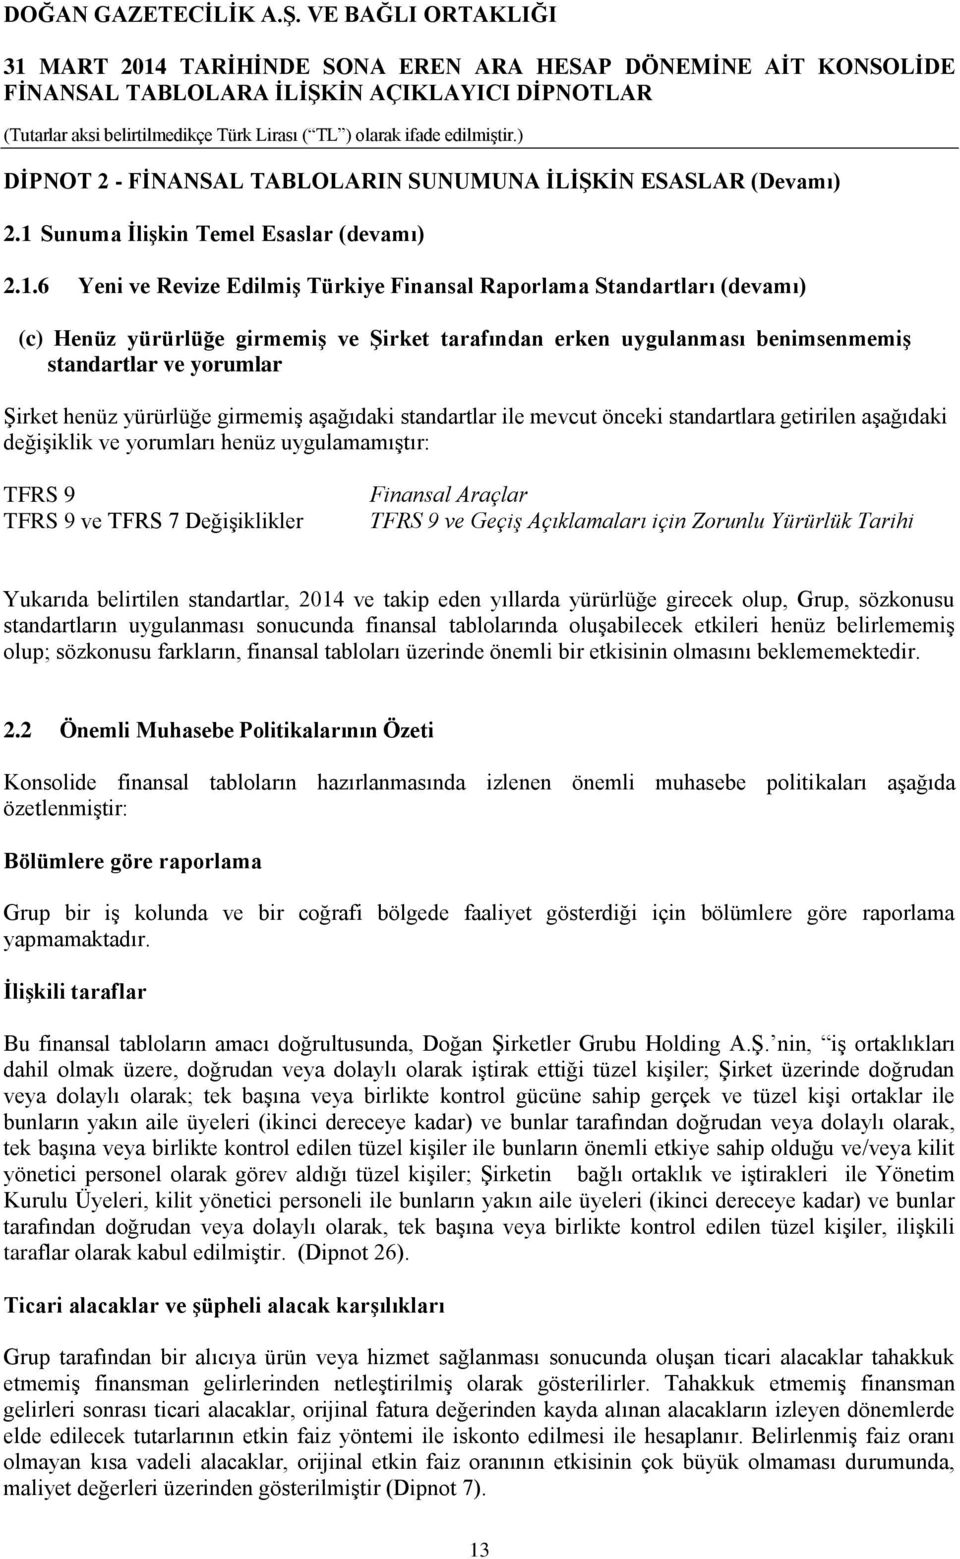 6 Yeni ve Revize Edilmiş Türkiye Finansal Raporlama Standartları (devamı) (c) Henüz yürürlüğe girmemiş ve Şirket tarafından erken uygulanması benimsenmemiş standartlar ve yorumlar Şirket henüz